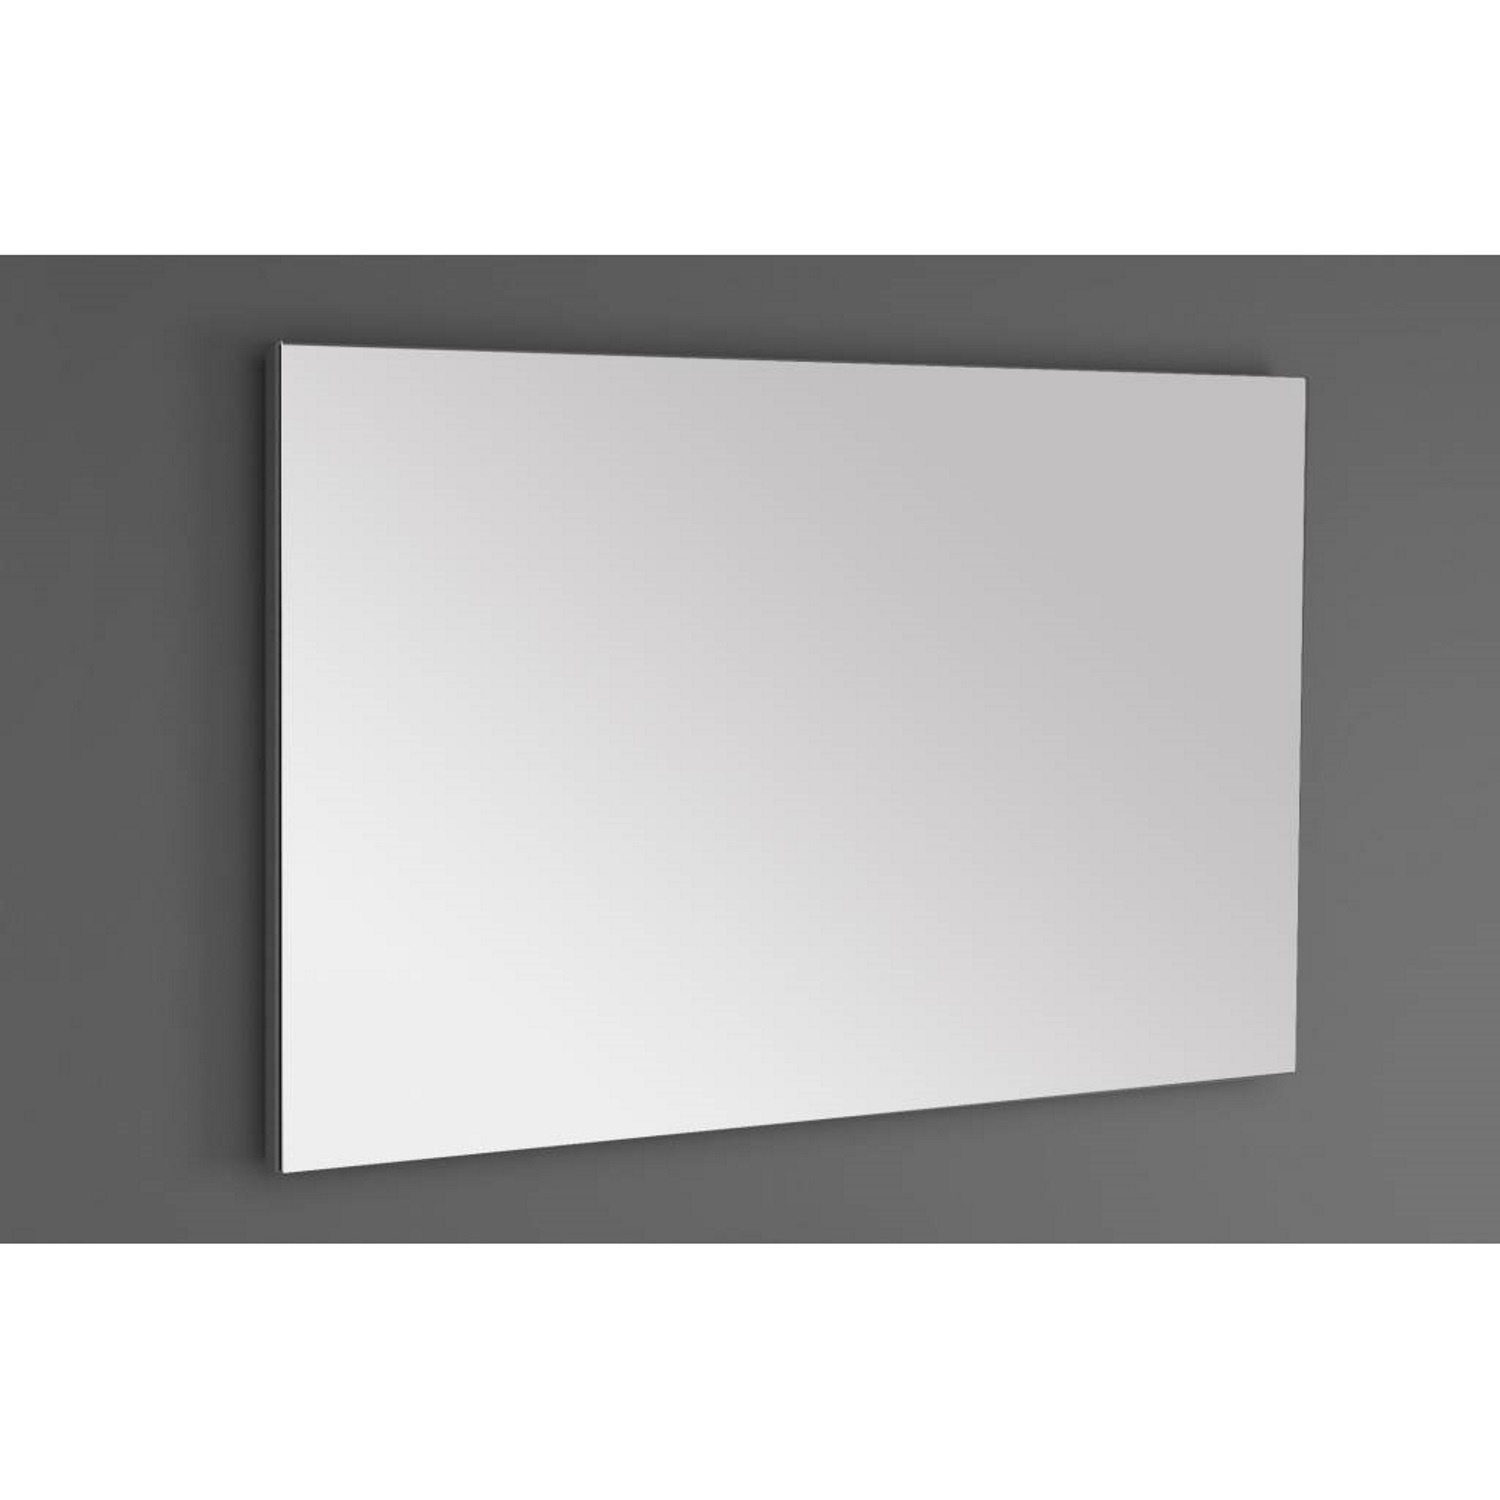 Badkamerspiegel Sanilux Standaard 100x70x2,5 cm met Spiegelverwarming Sanilux